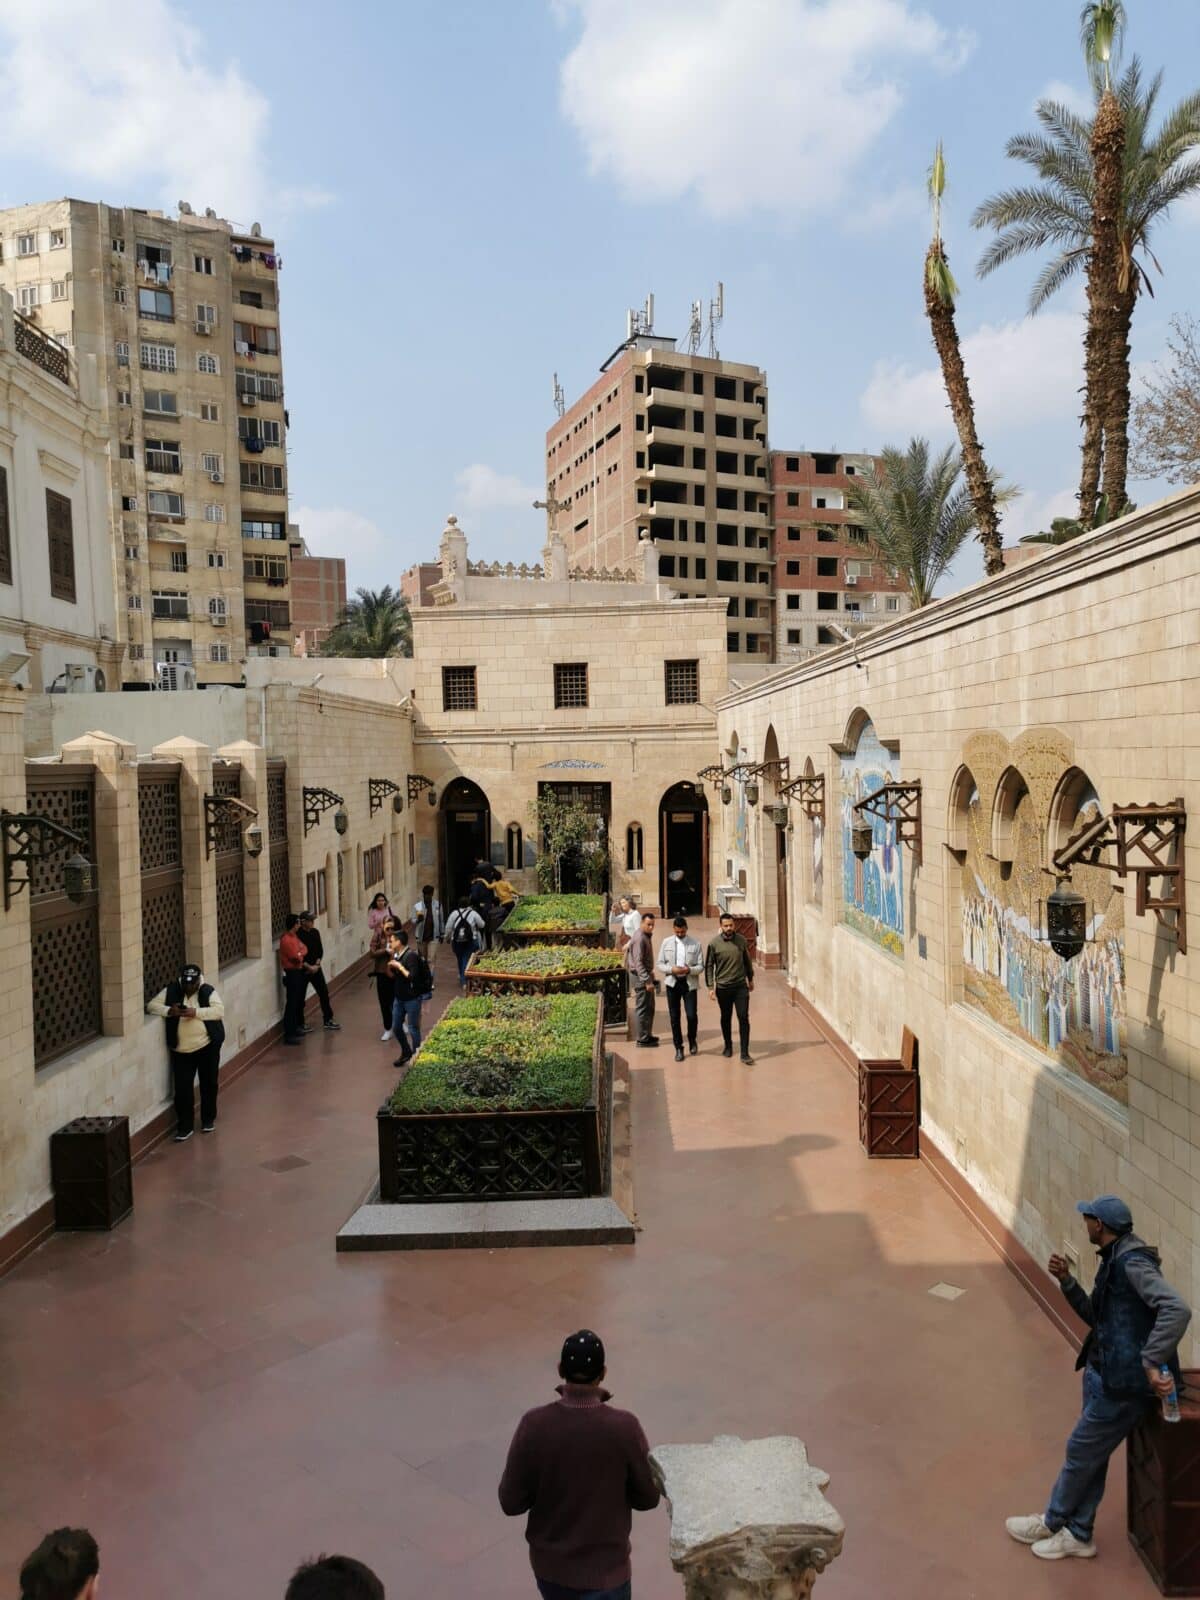 Scorcio dalla chiesa copta del Cairo